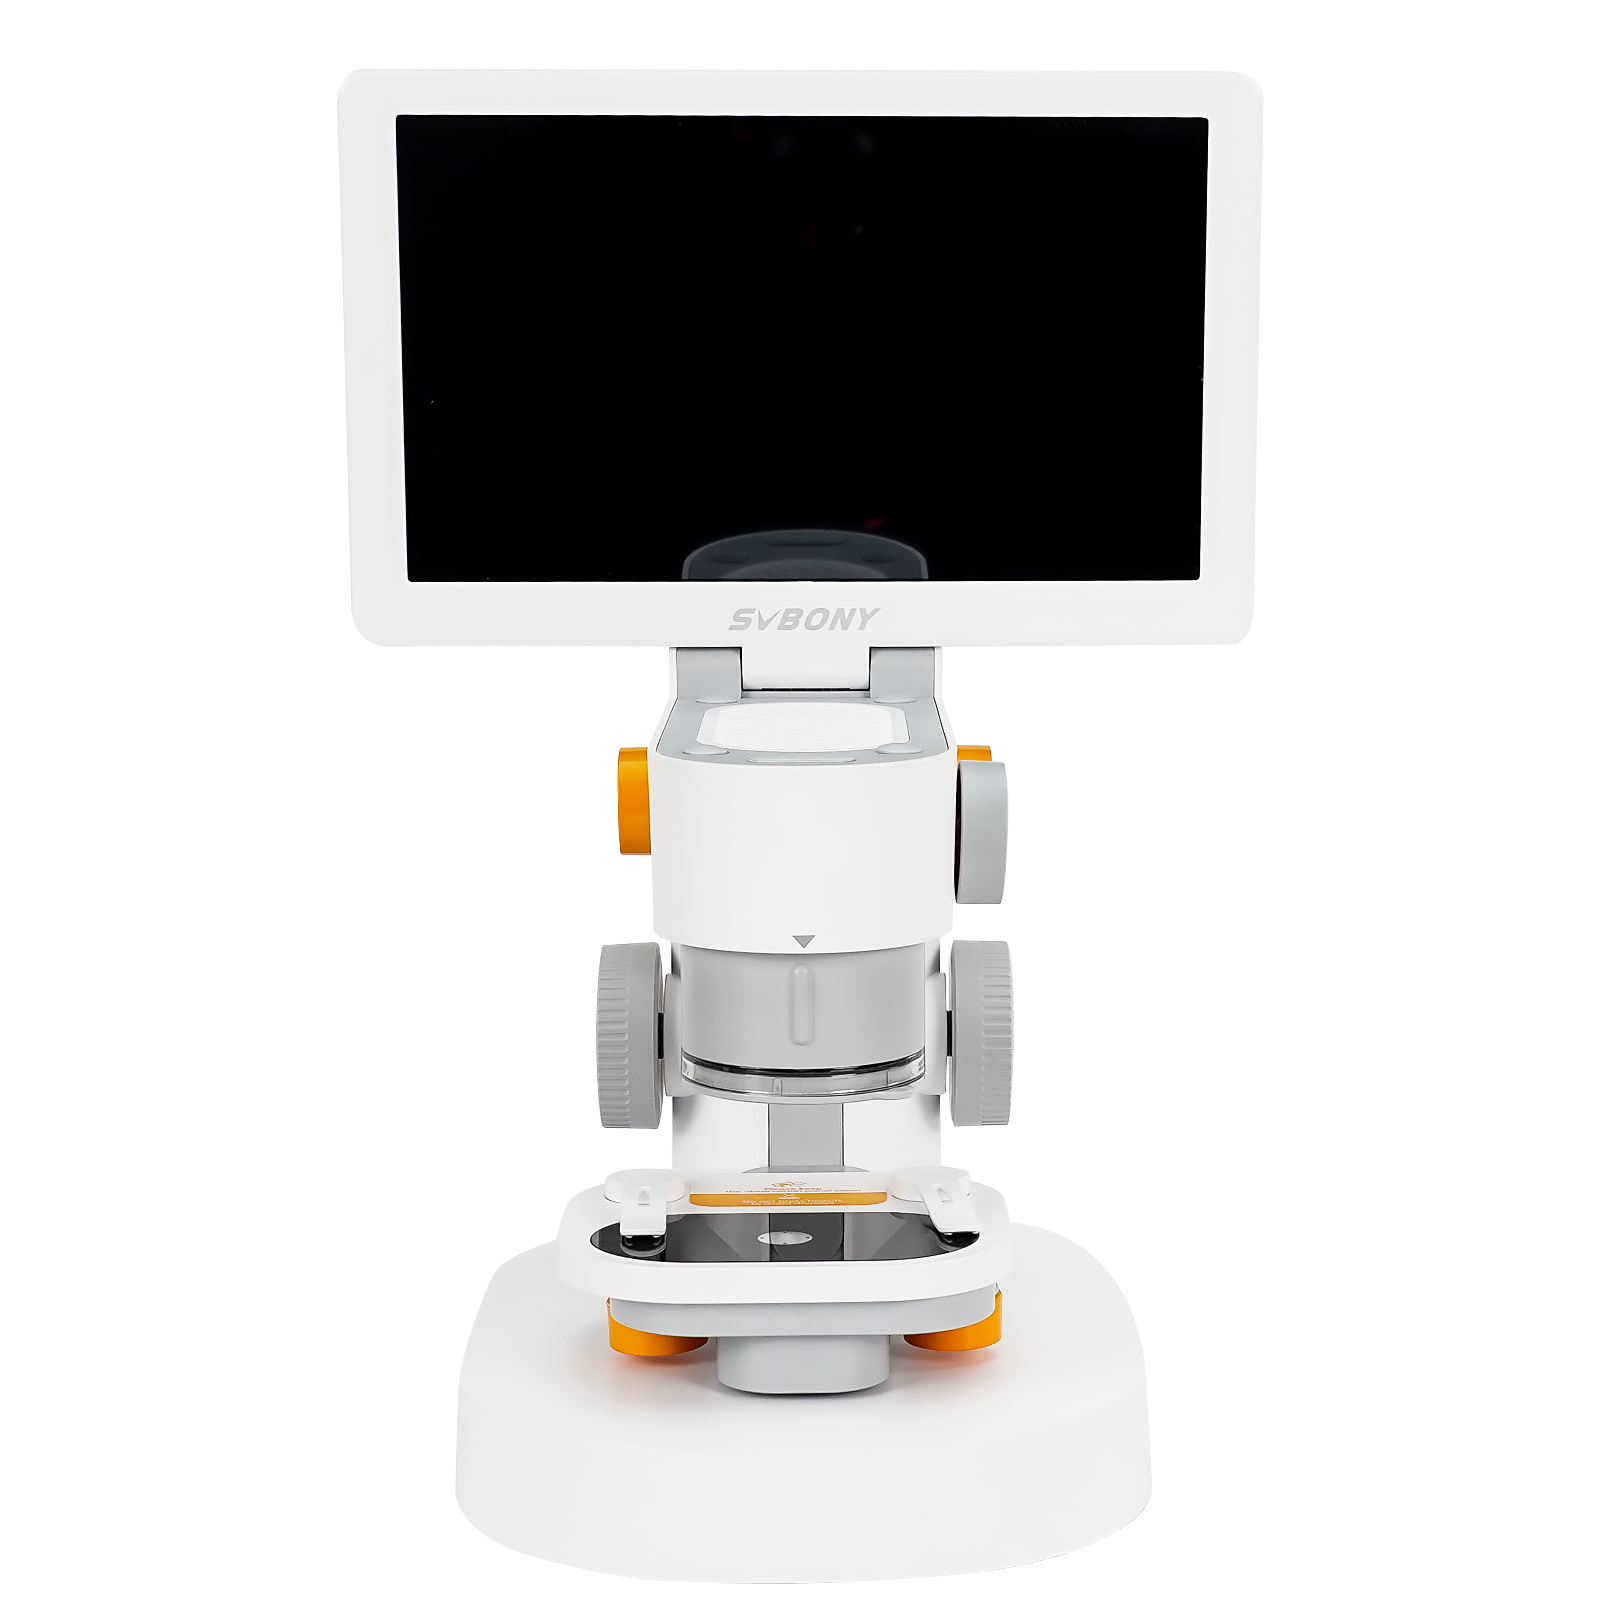 SVBONY SM101 Микроскоп 9'' IPS сенсорный экран с функцией редактирования и измерения для домашнего образования и наблюдения для студентов STEM